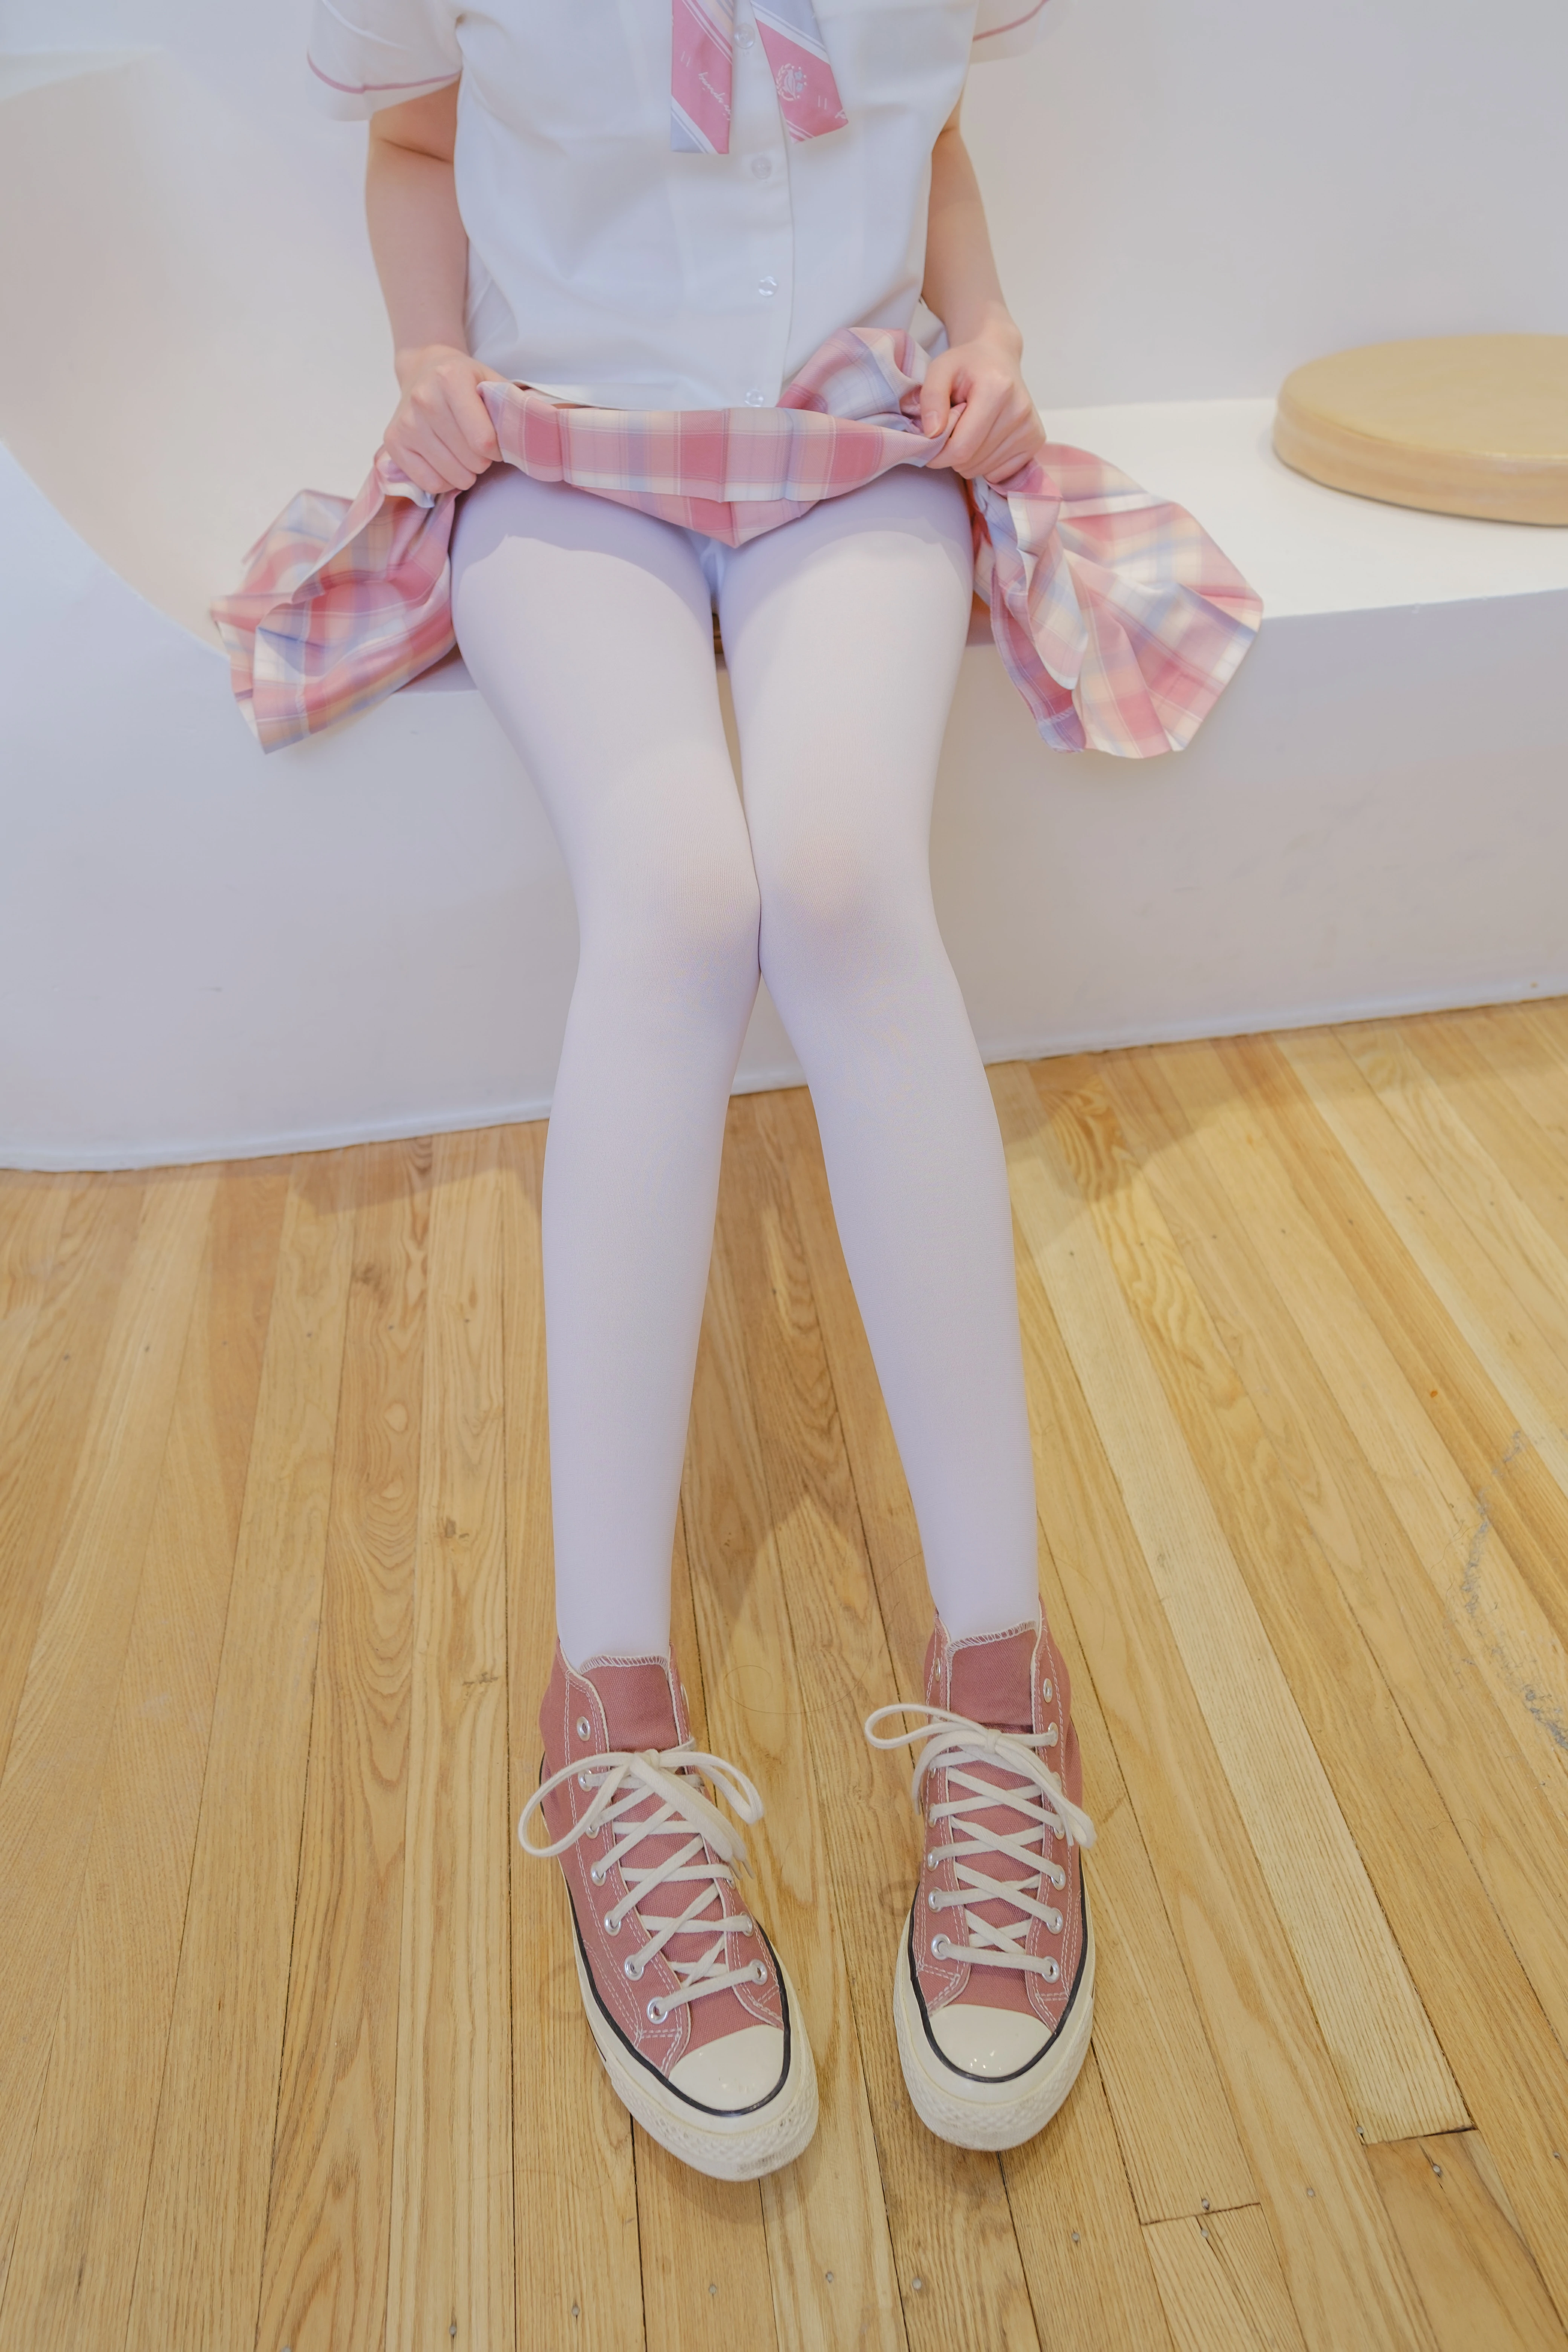 [森萝财团]GZAY3 酒店JK制服小萝莉 白色衬衫与粉色短裙加白色丝袜美腿性感私房写真集,0002